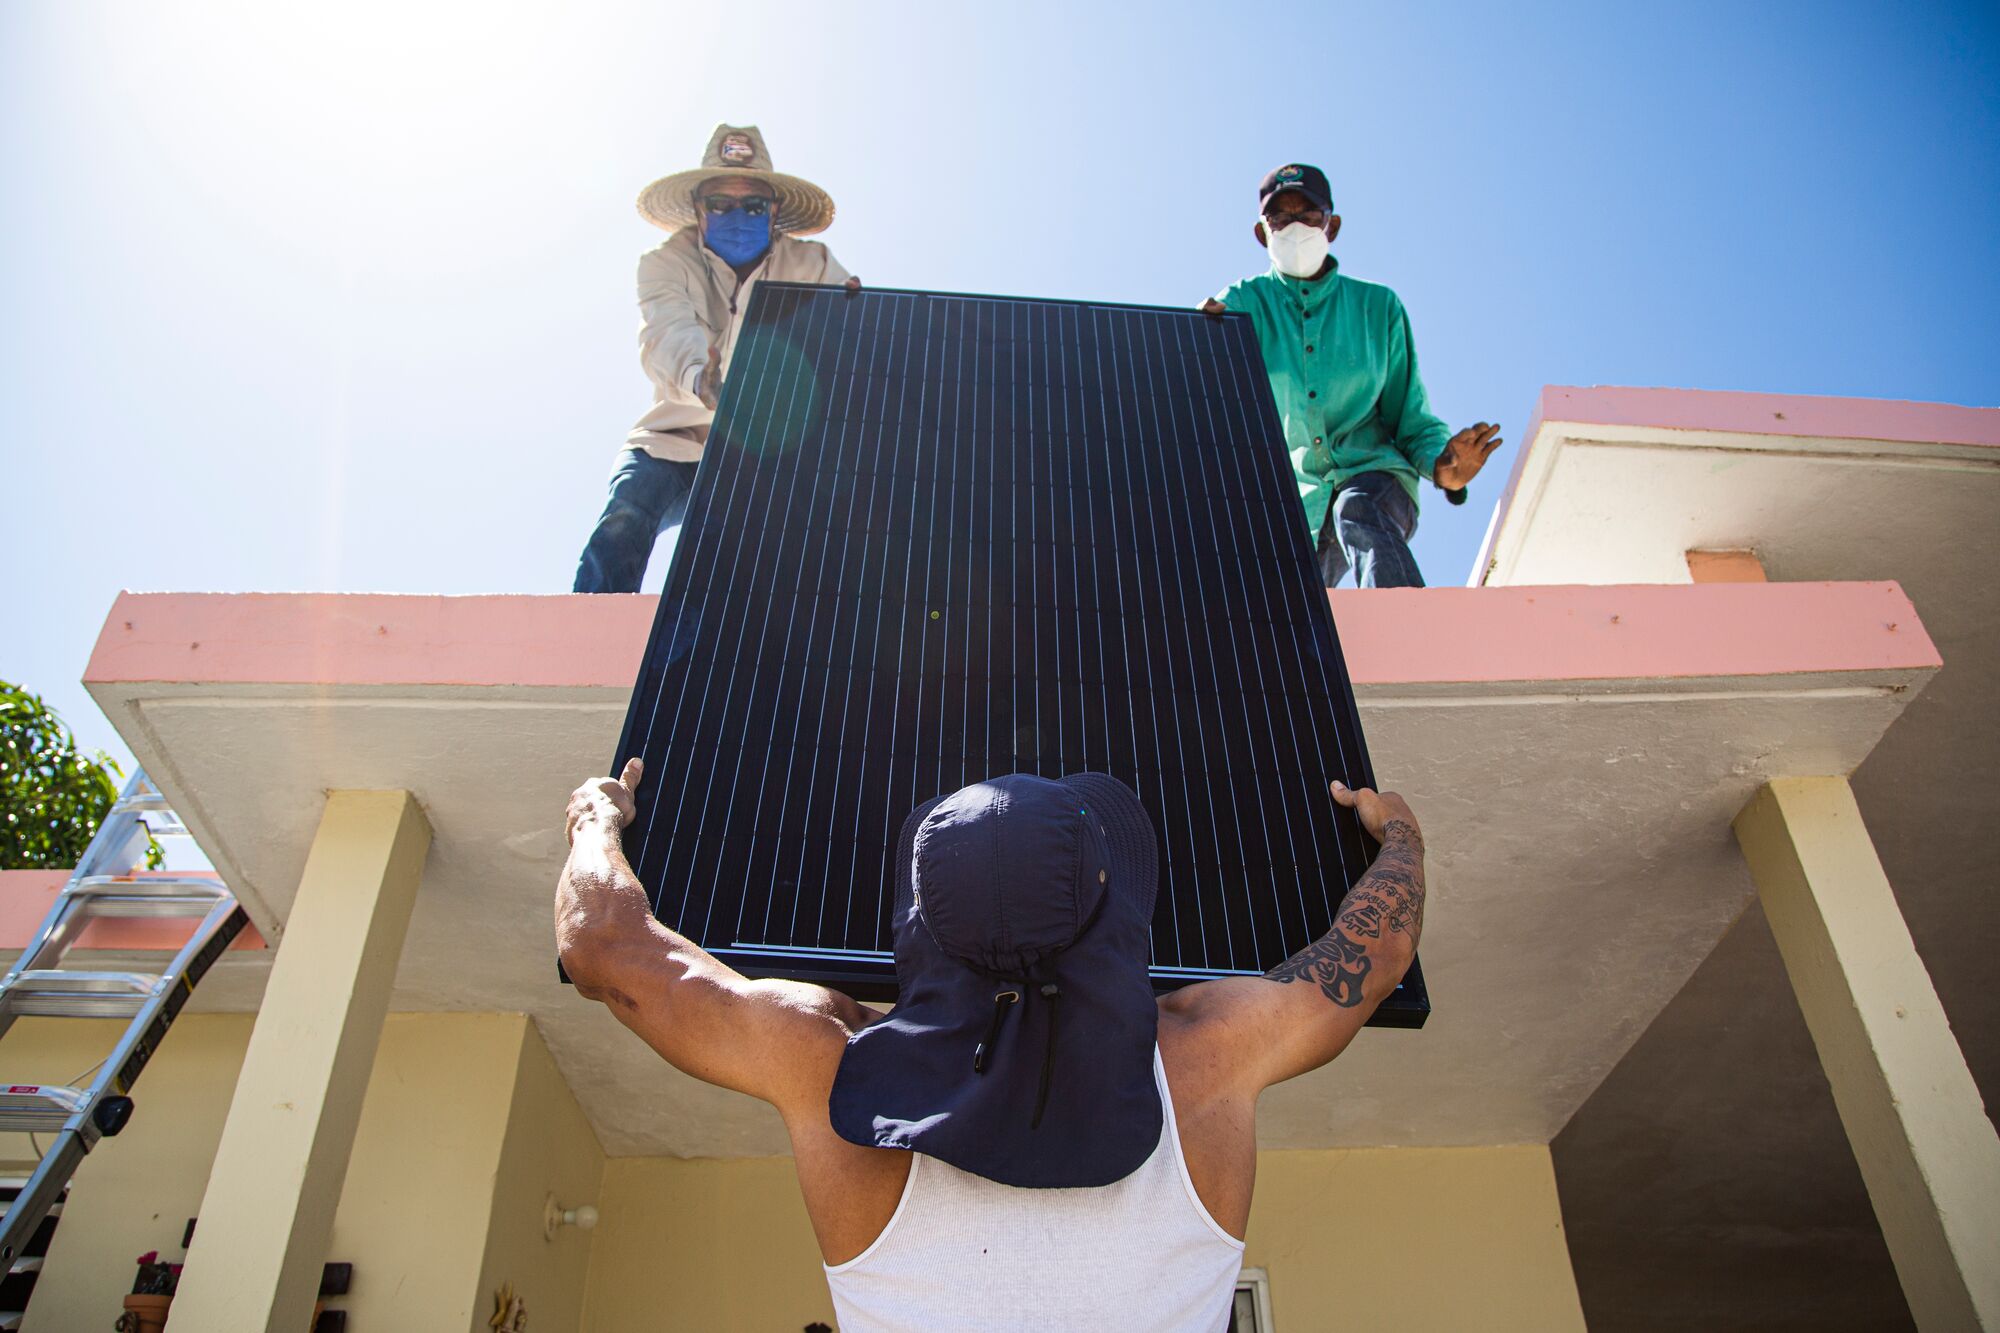 Un grupo de voluntarios ayuda a instalar un sistema de energía solar en la casa de Rosalina Marrero Martínez, de 79 años, en la comunidad de Puente de Jobos en Guayama, Puerto Rico, en marzo de 2021.